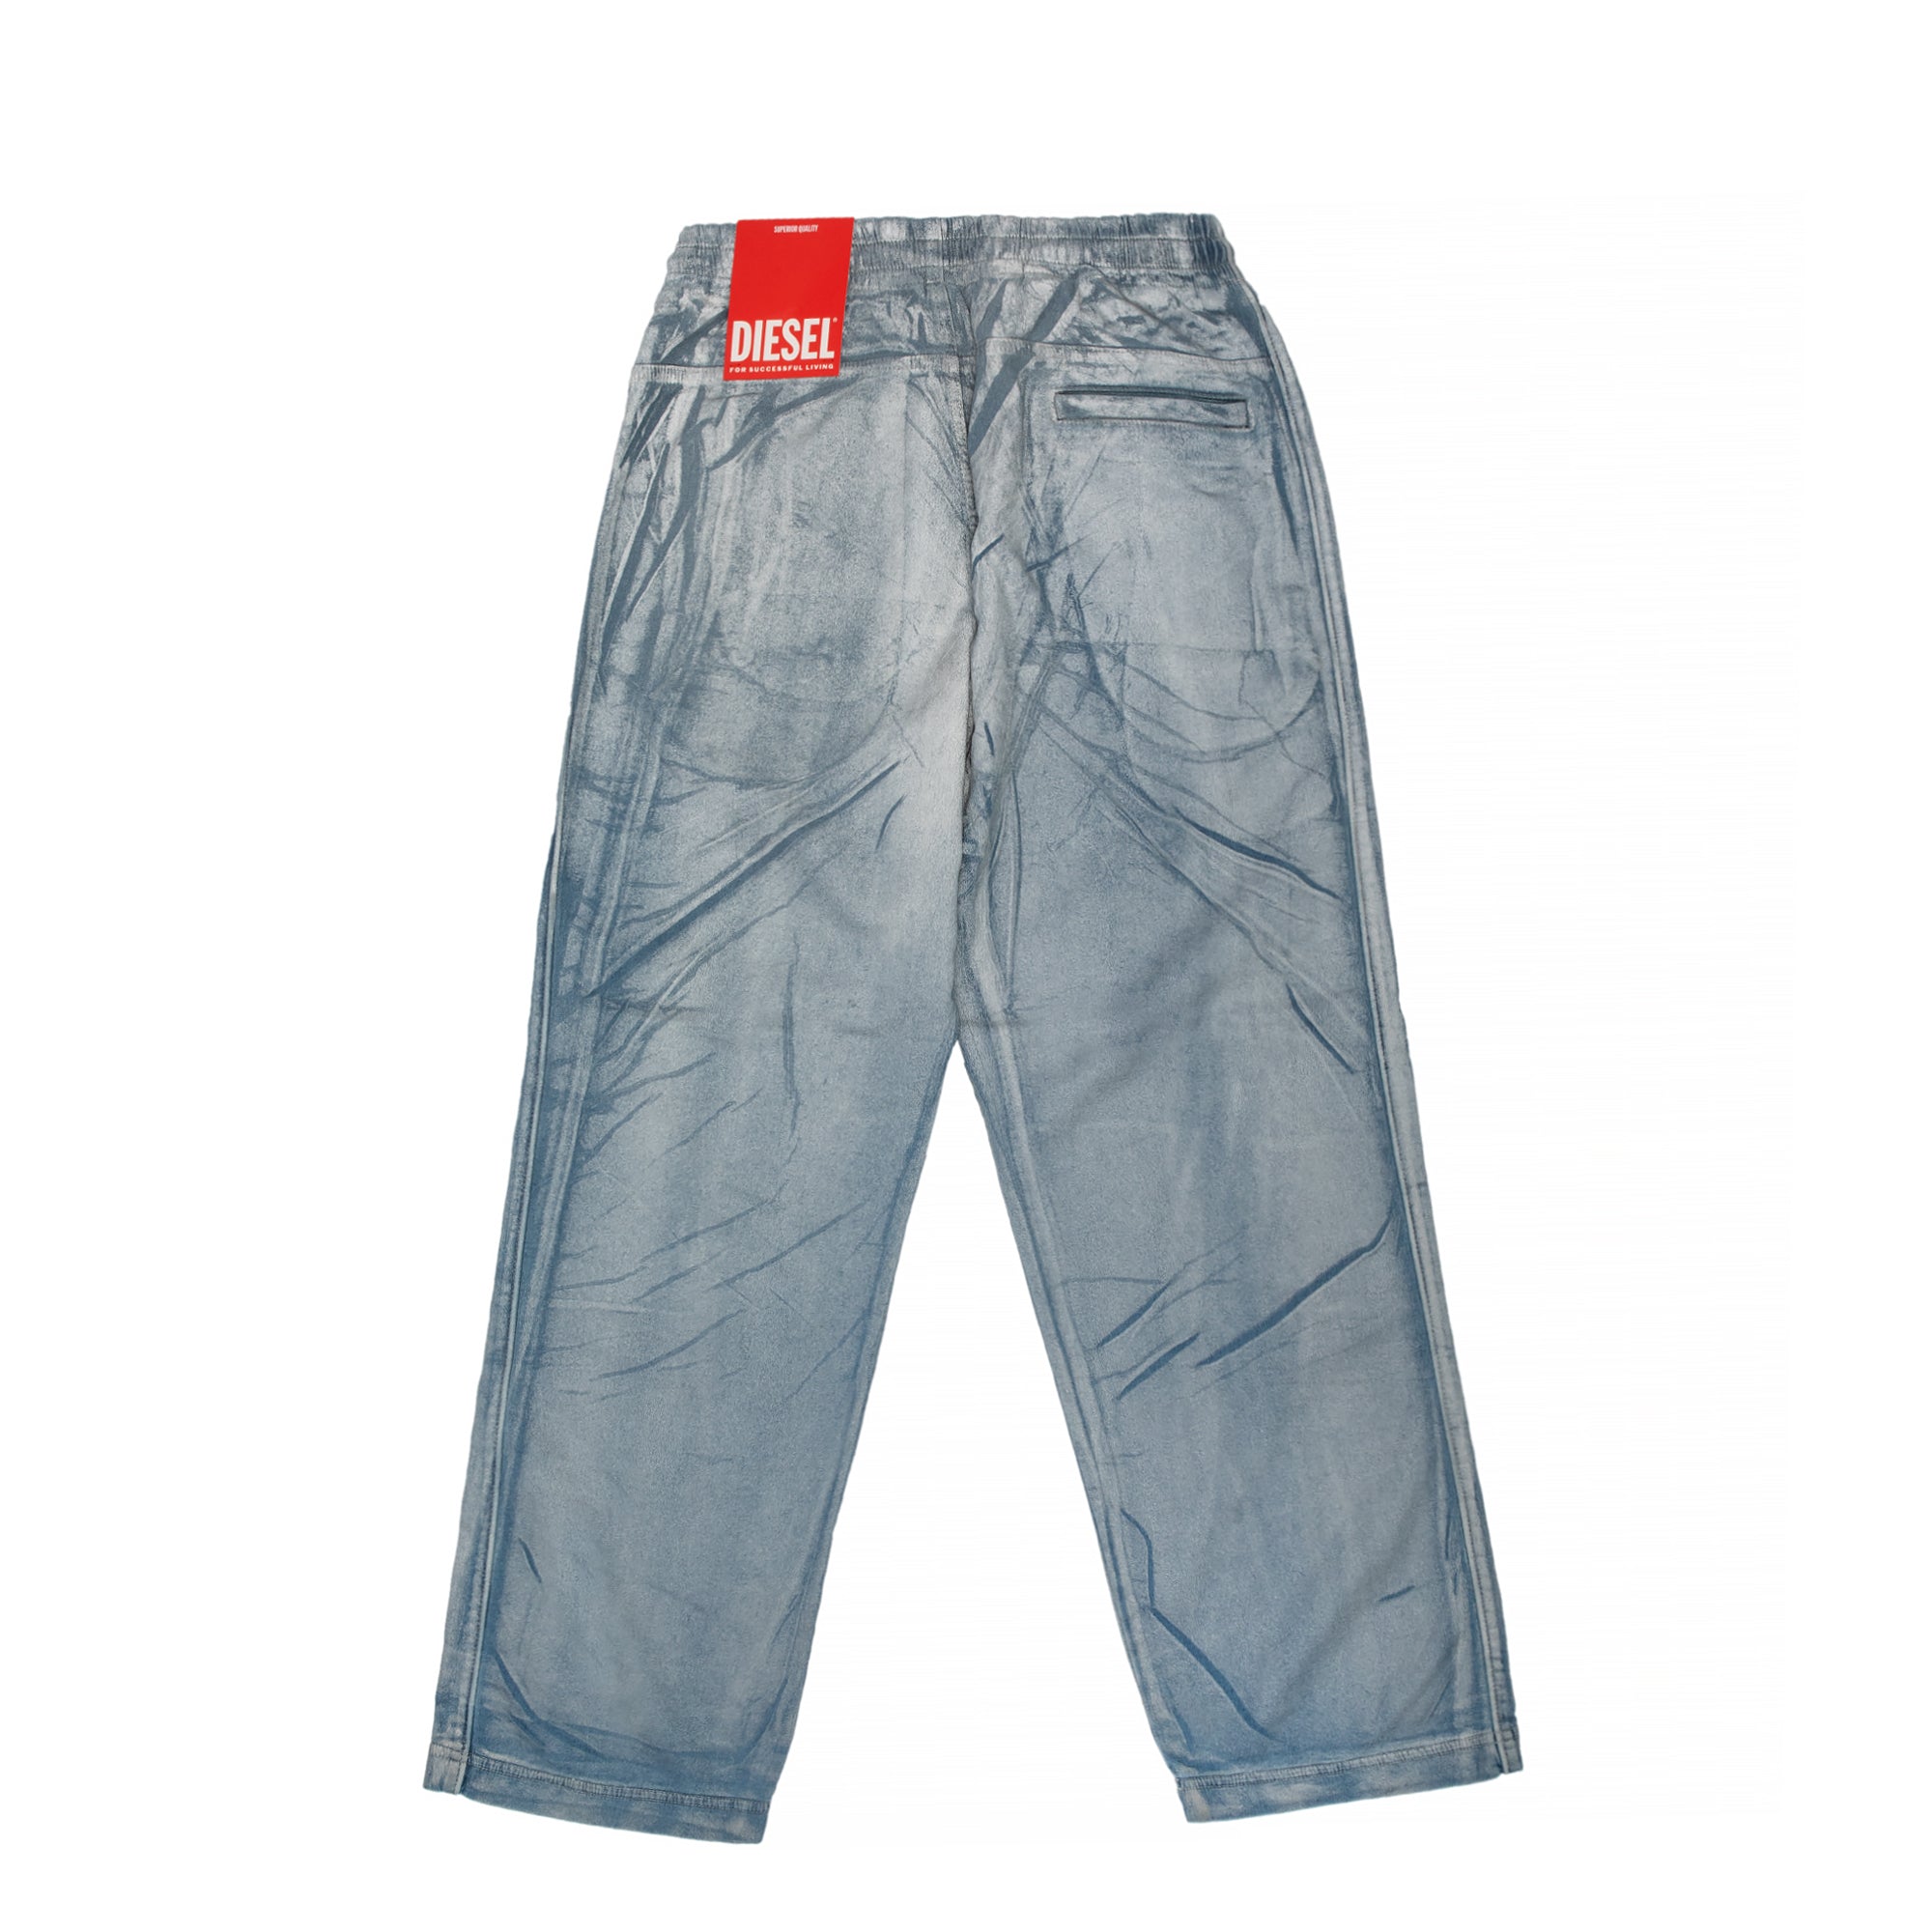 Mens Adidas Originals Cuffed Denim Blue Jeans Tracksuit Bottoms Pants  Joggers L: Amazon.co.uk: Clothing #Pants #me… | Mens outfits, Adidas  outfit, Tracksuit bottoms